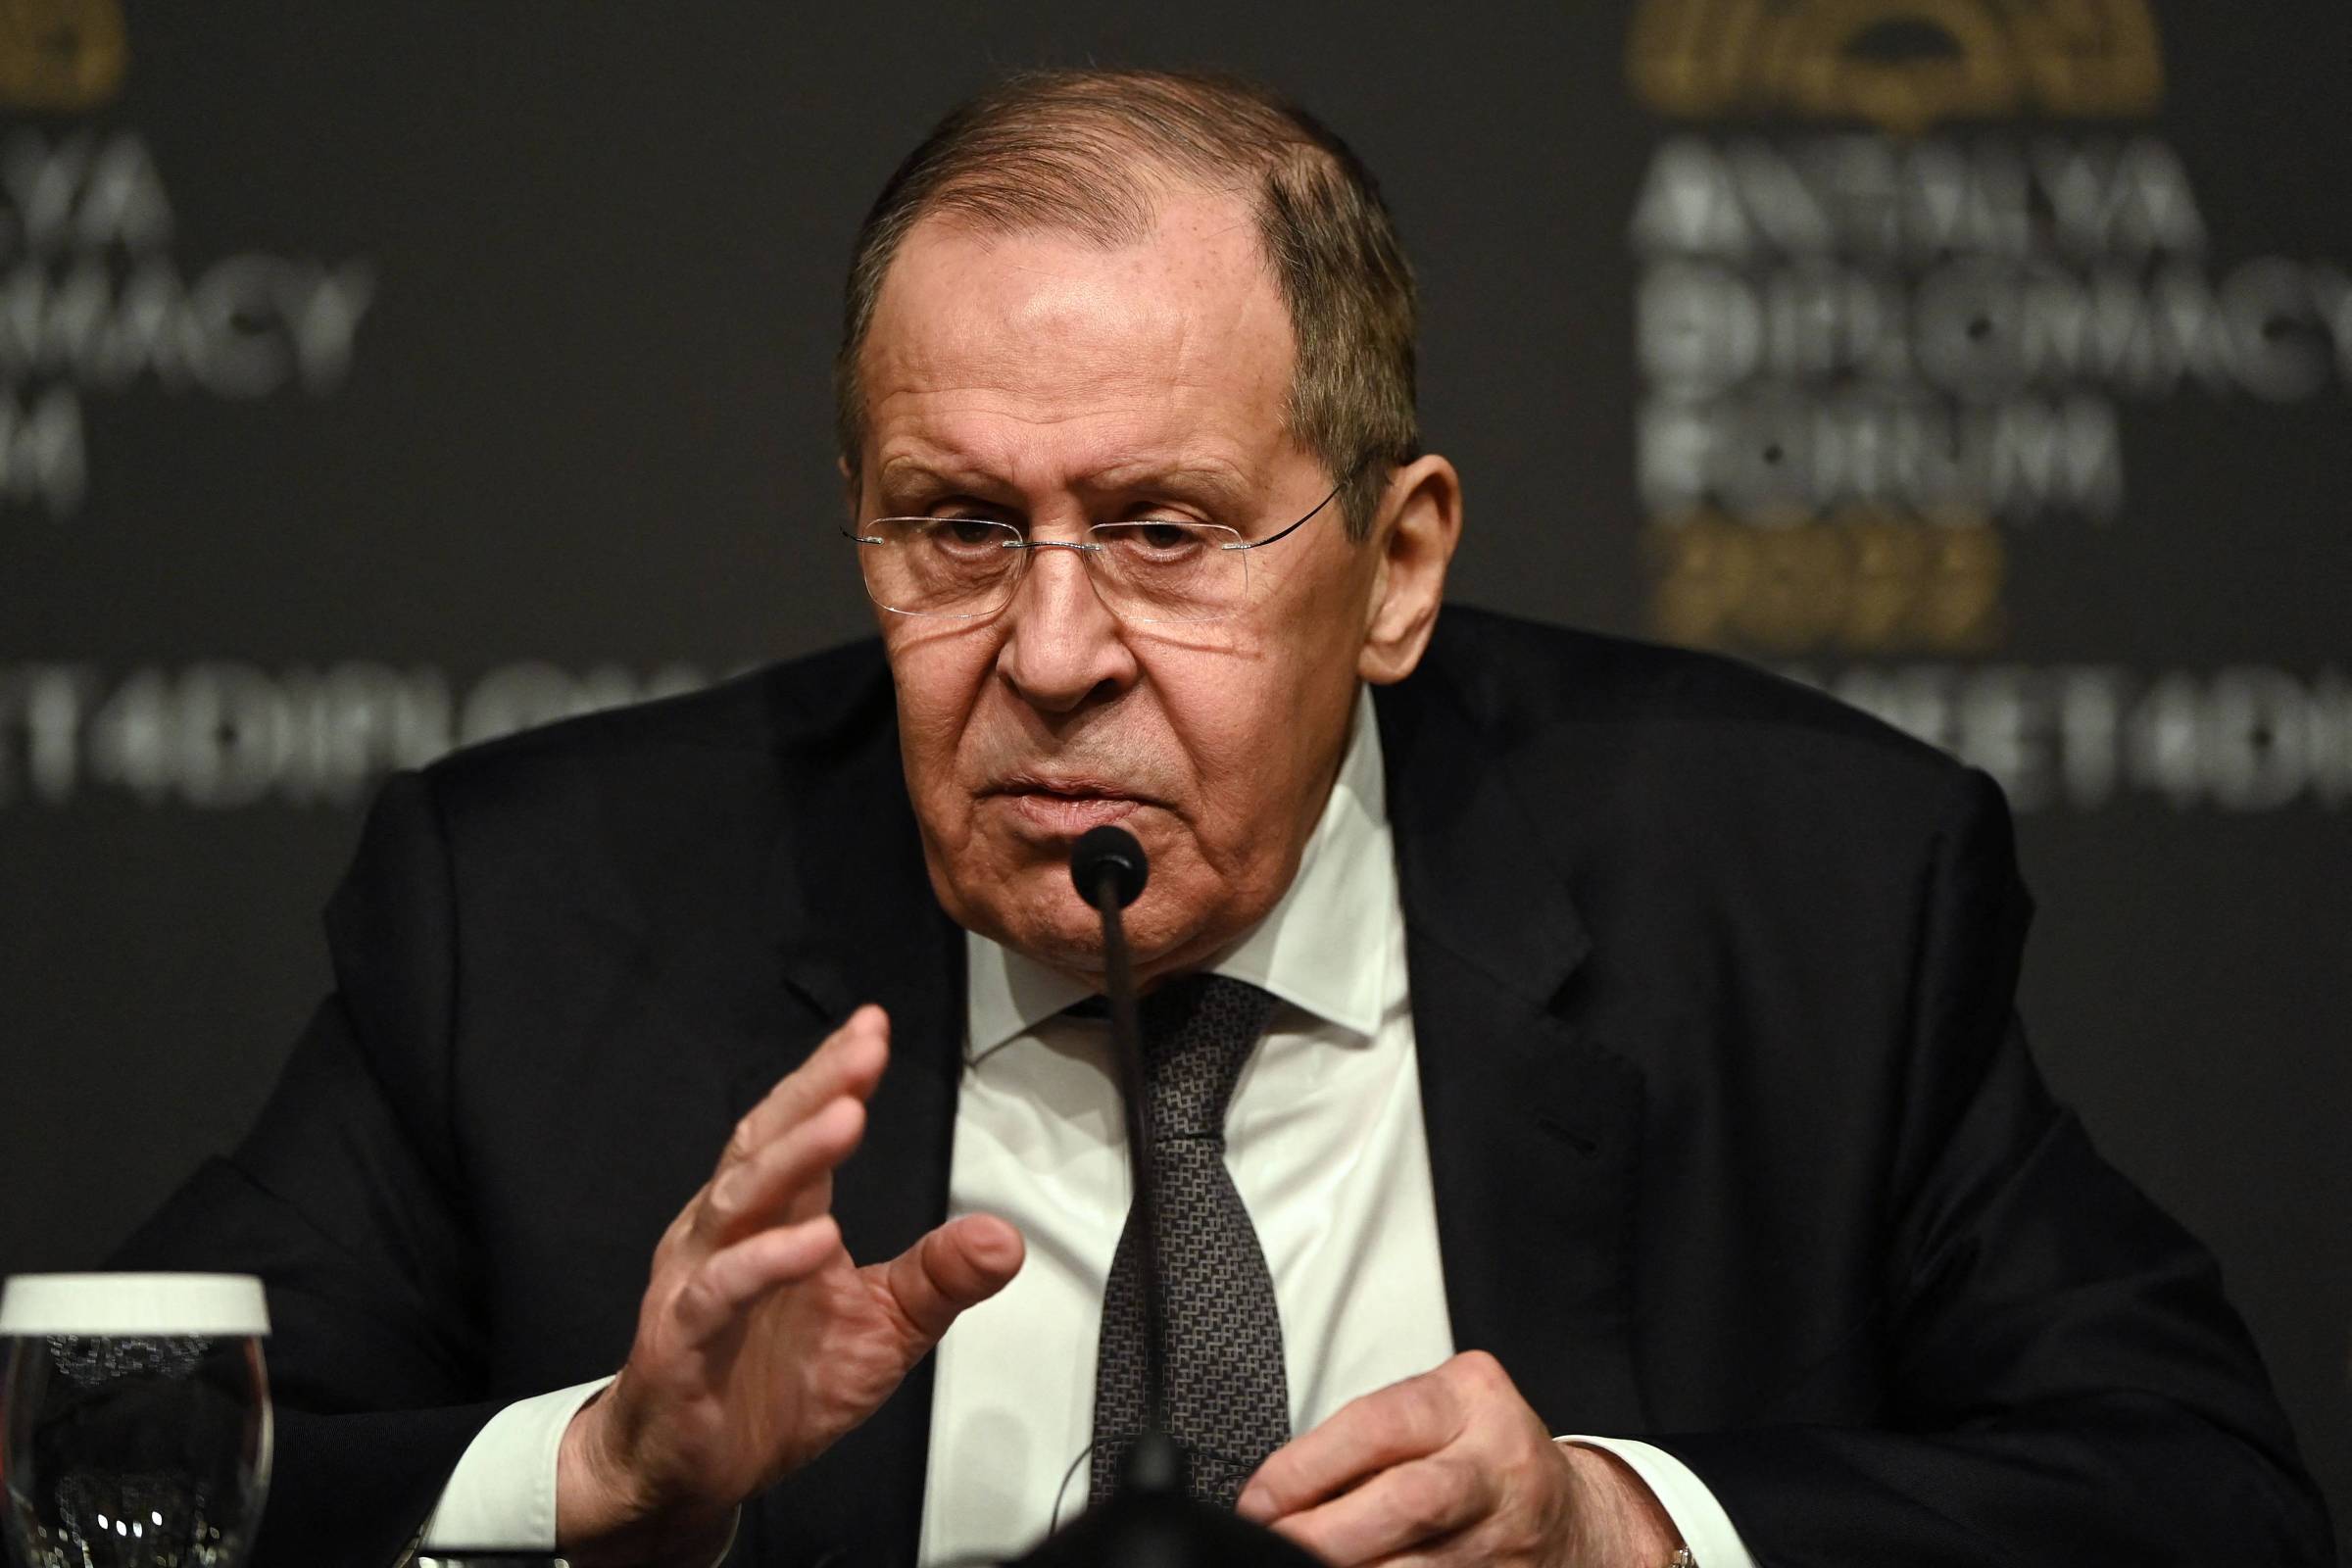 Embaixador russo vê risco alto de conflito entre EUA e Rússia